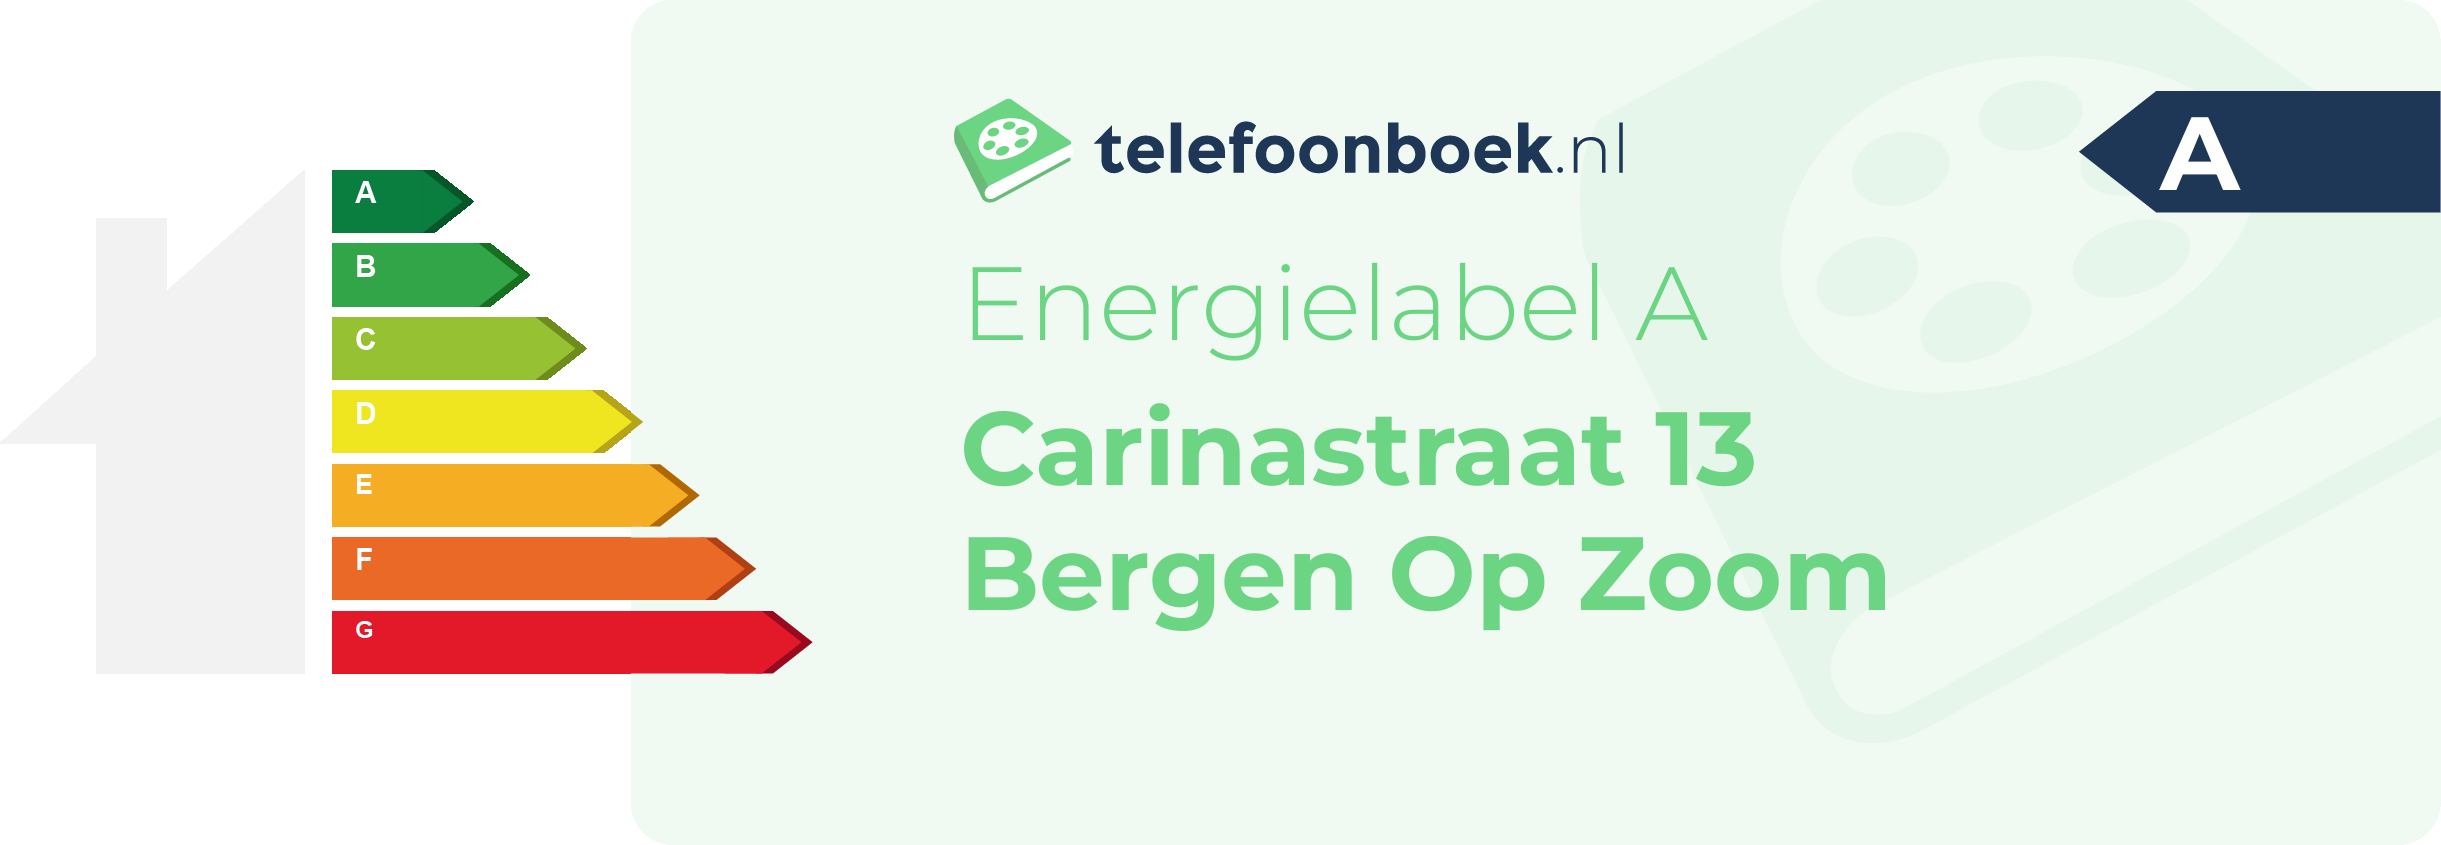 Energielabel Carinastraat 13 Bergen Op Zoom